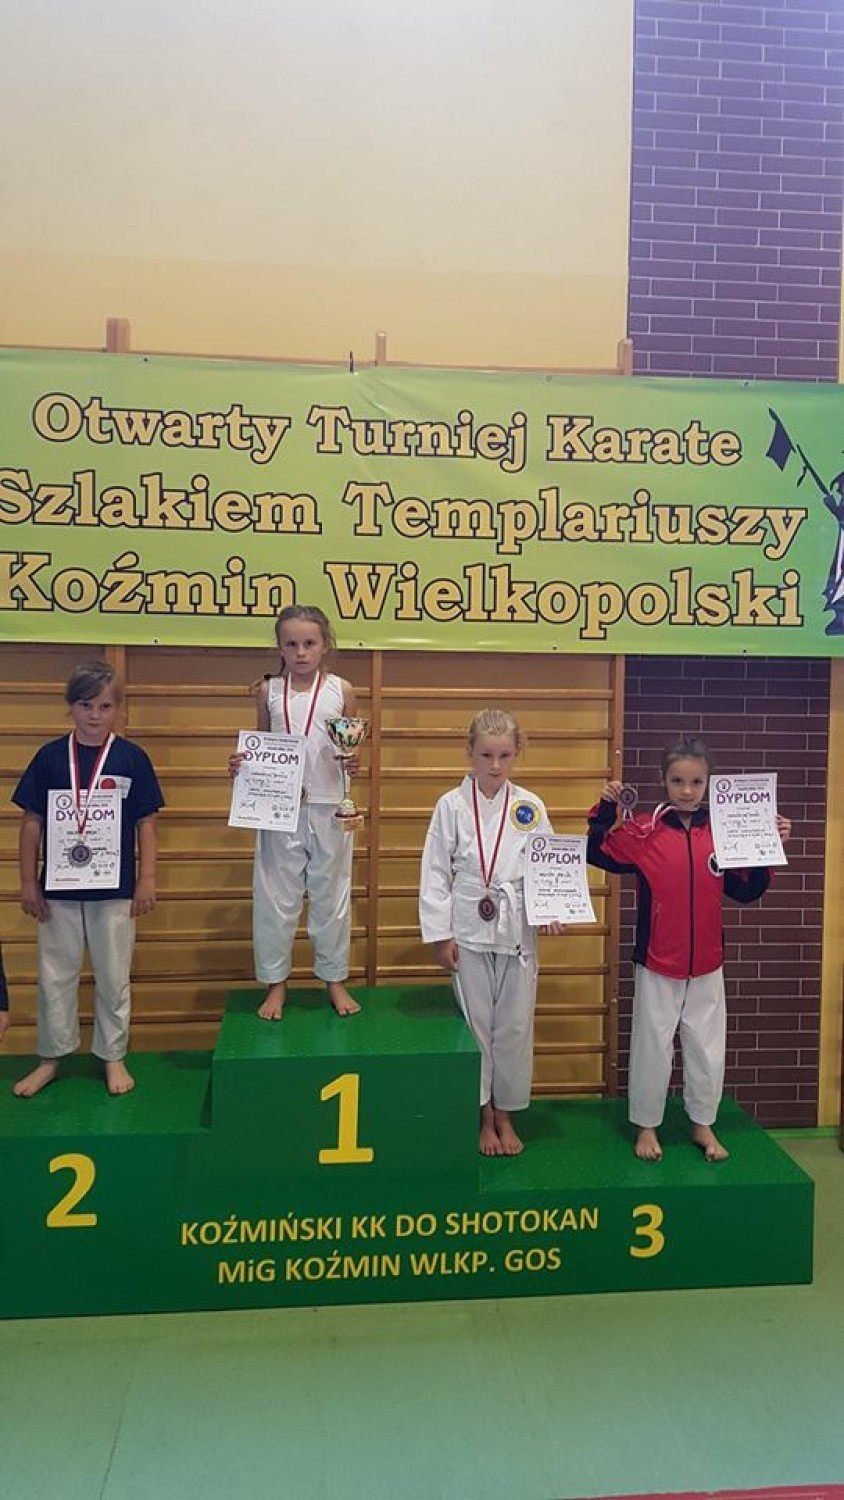 Pleszewscy karatecy na VI Otwartym Turnieju Karate "Szlakiem Templariuszy" w Koźminie Wielkopolskim    